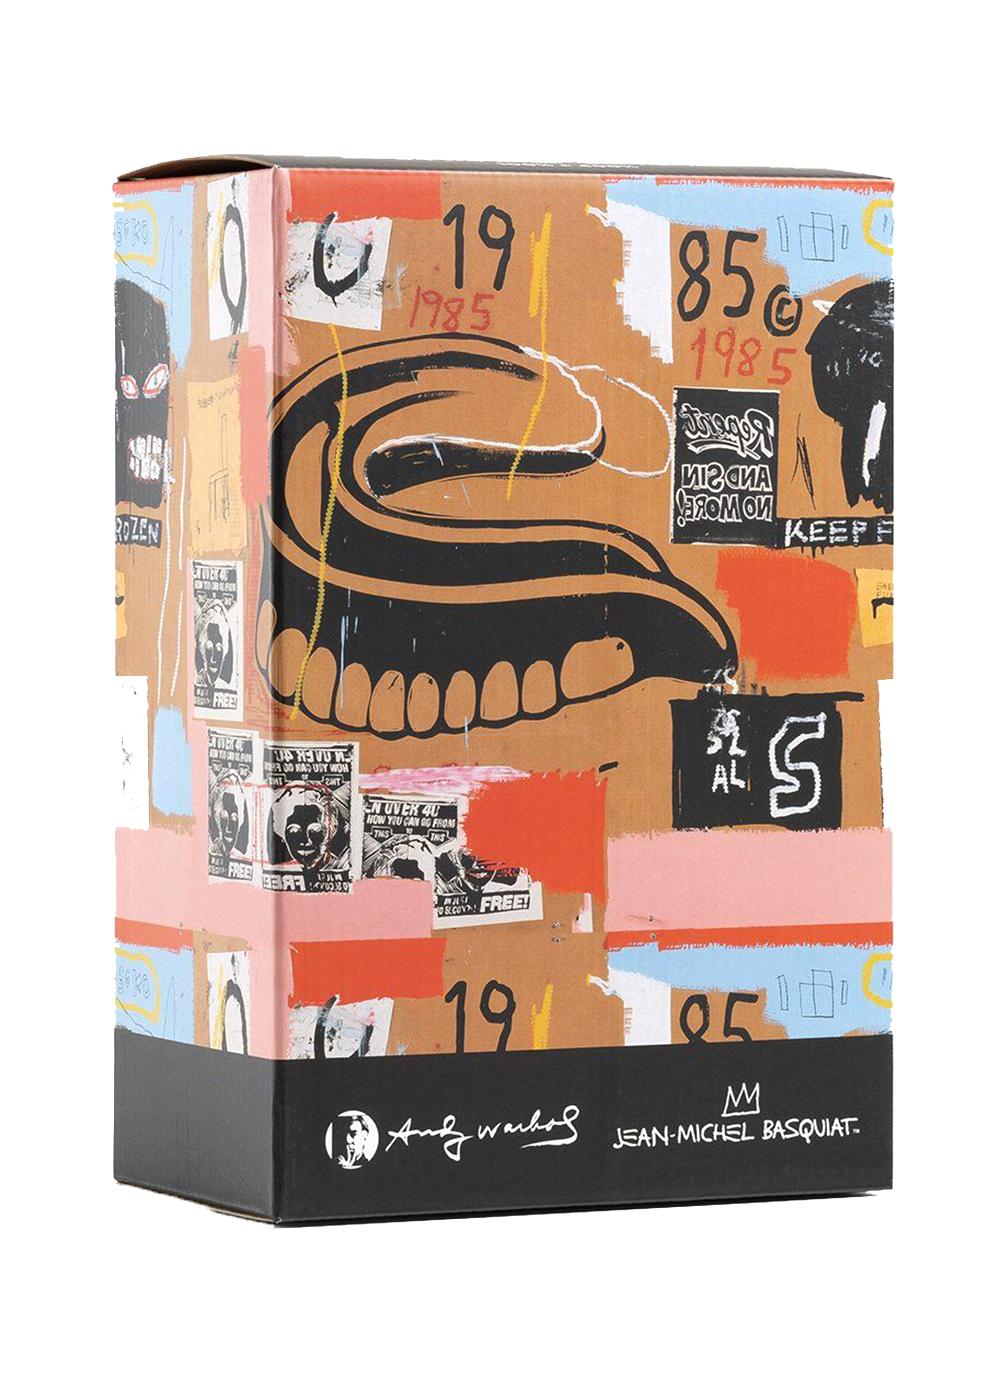 Be@rbrick x Andy Warhol Foundation and Estate of Jean-Michel Basquiat Vinyl Figur: (1000%) 
Ein einzigartiges, zeitloses Sammlerstück, geschützt und lizenziert durch den Nachlass von Jean-Michel Basquiat und Andy Warhol. Das gemeinsame Sammlerstück